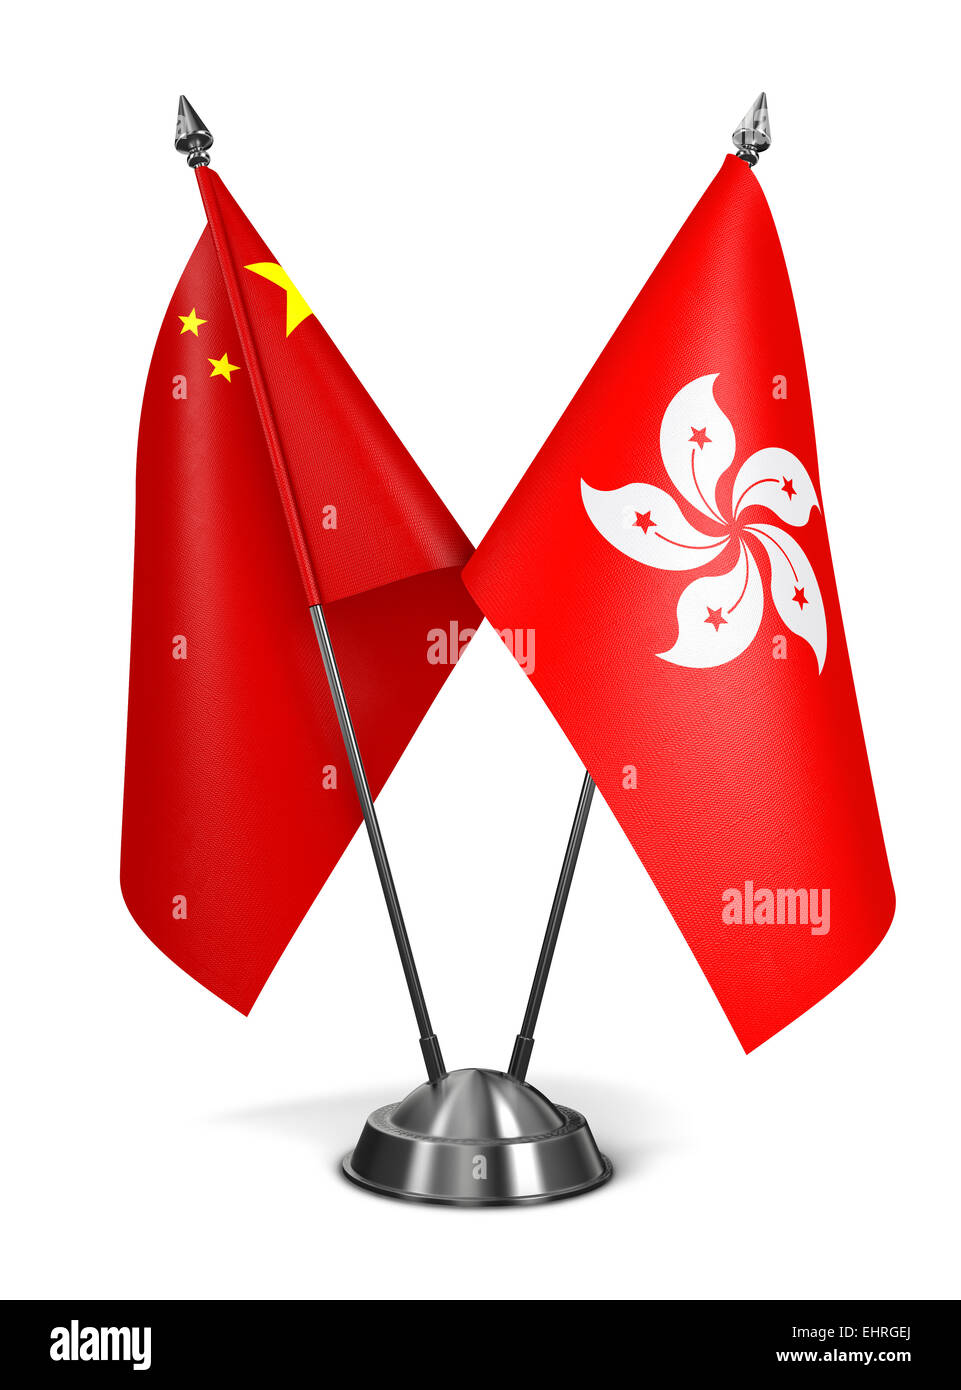 Hong Kong and China - Miniature Flags. Stock Photo